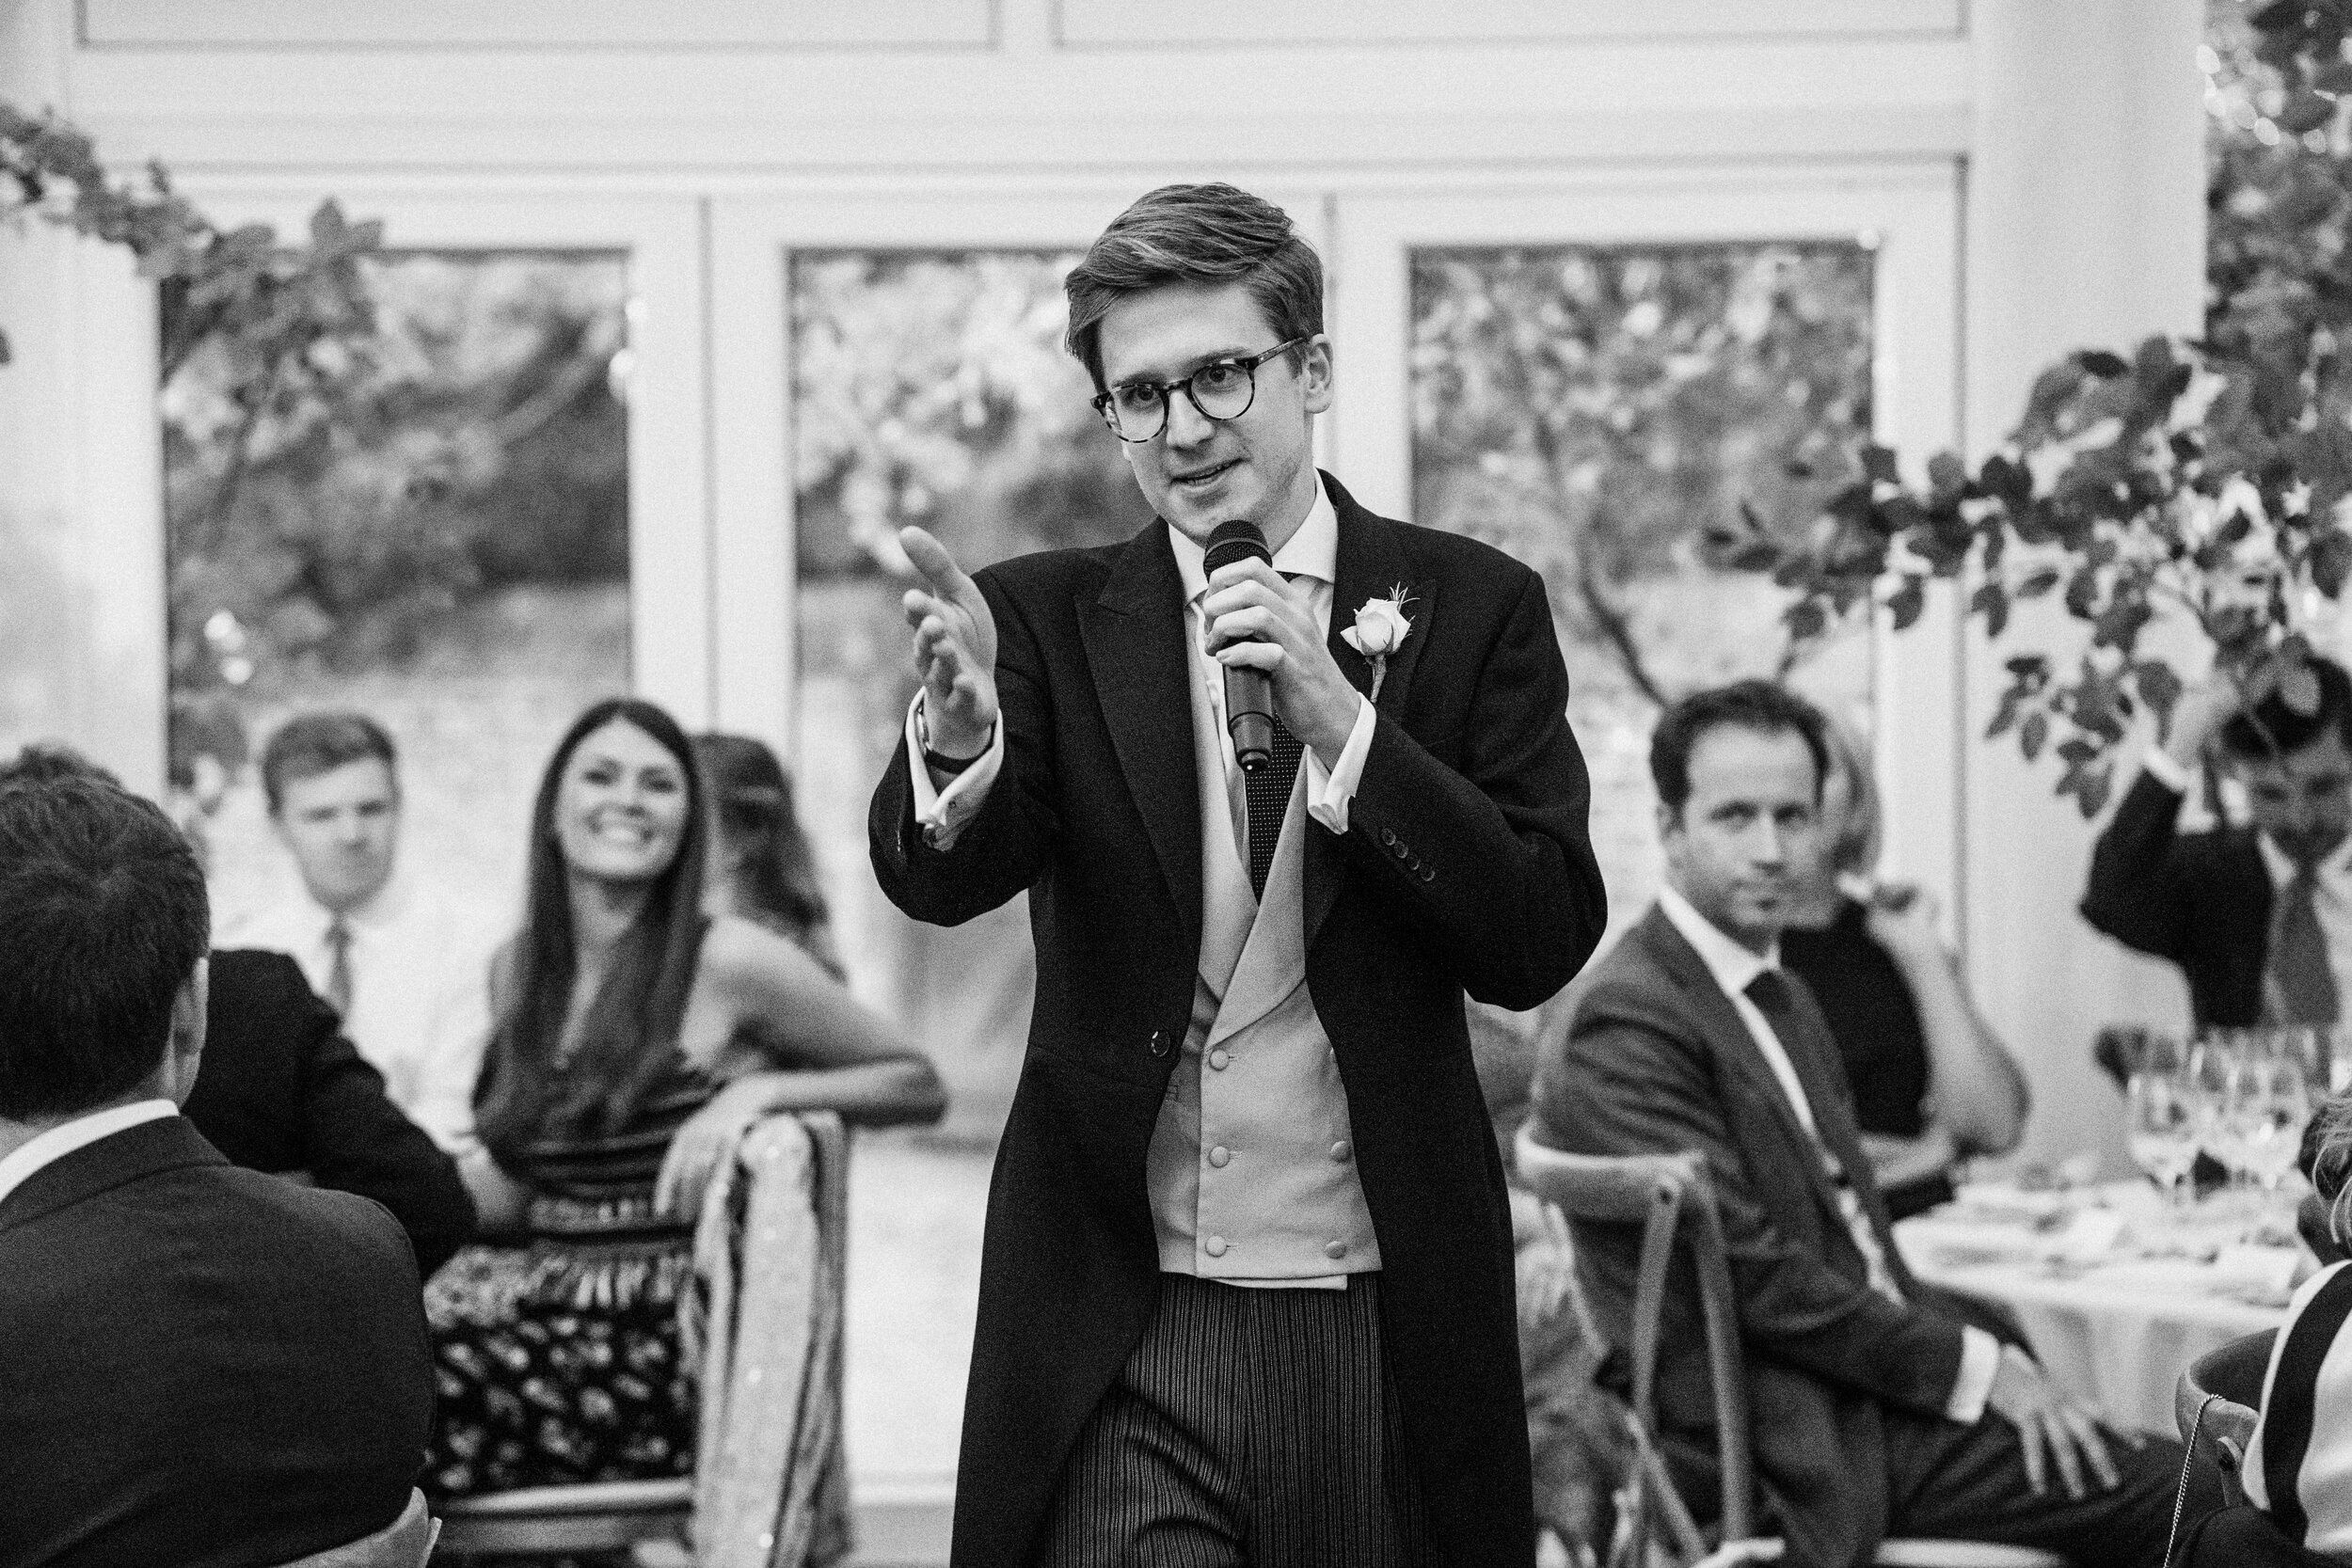 best man giving speech at wedding reception